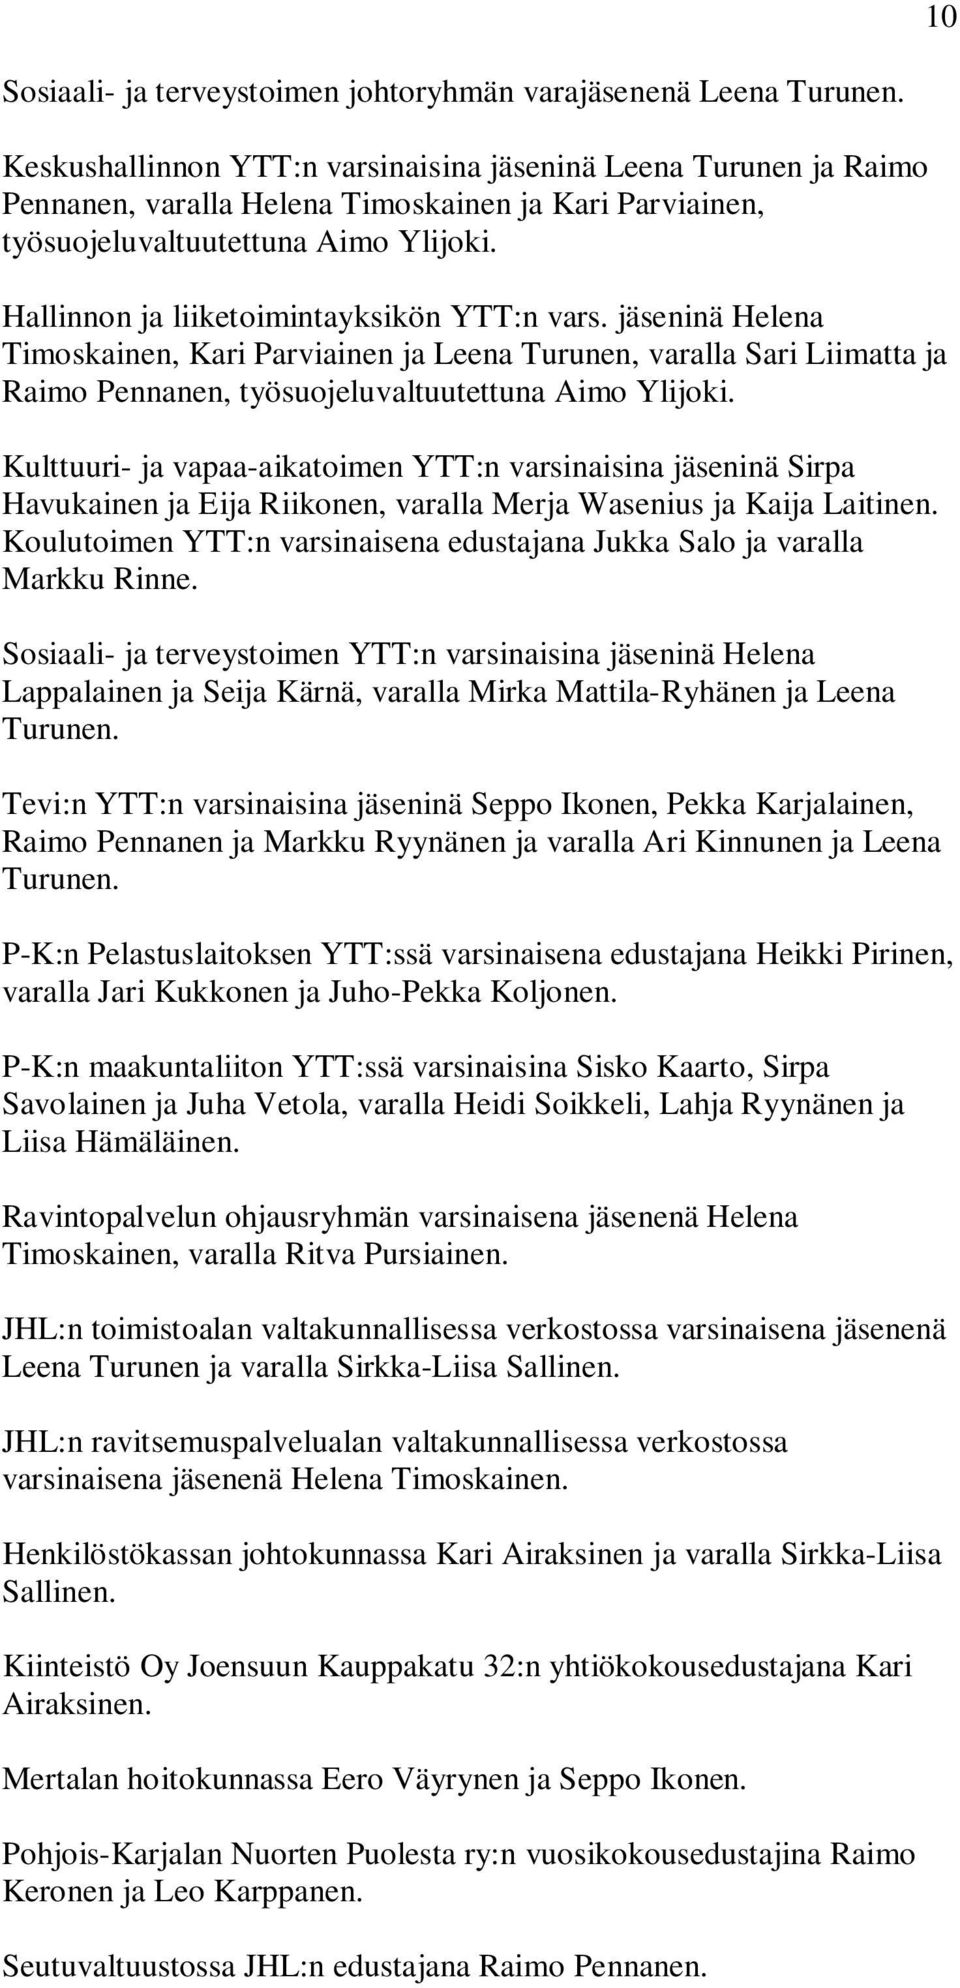 Hallinnon ja liiketoimintayksikön YTT:n vars. jäseninä Helena Timoskainen, Kari Parviainen ja Leena Turunen, varalla Sari Liimatta ja Raimo Pennanen, työsuojeluvaltuutettuna Aimo Ylijoki.